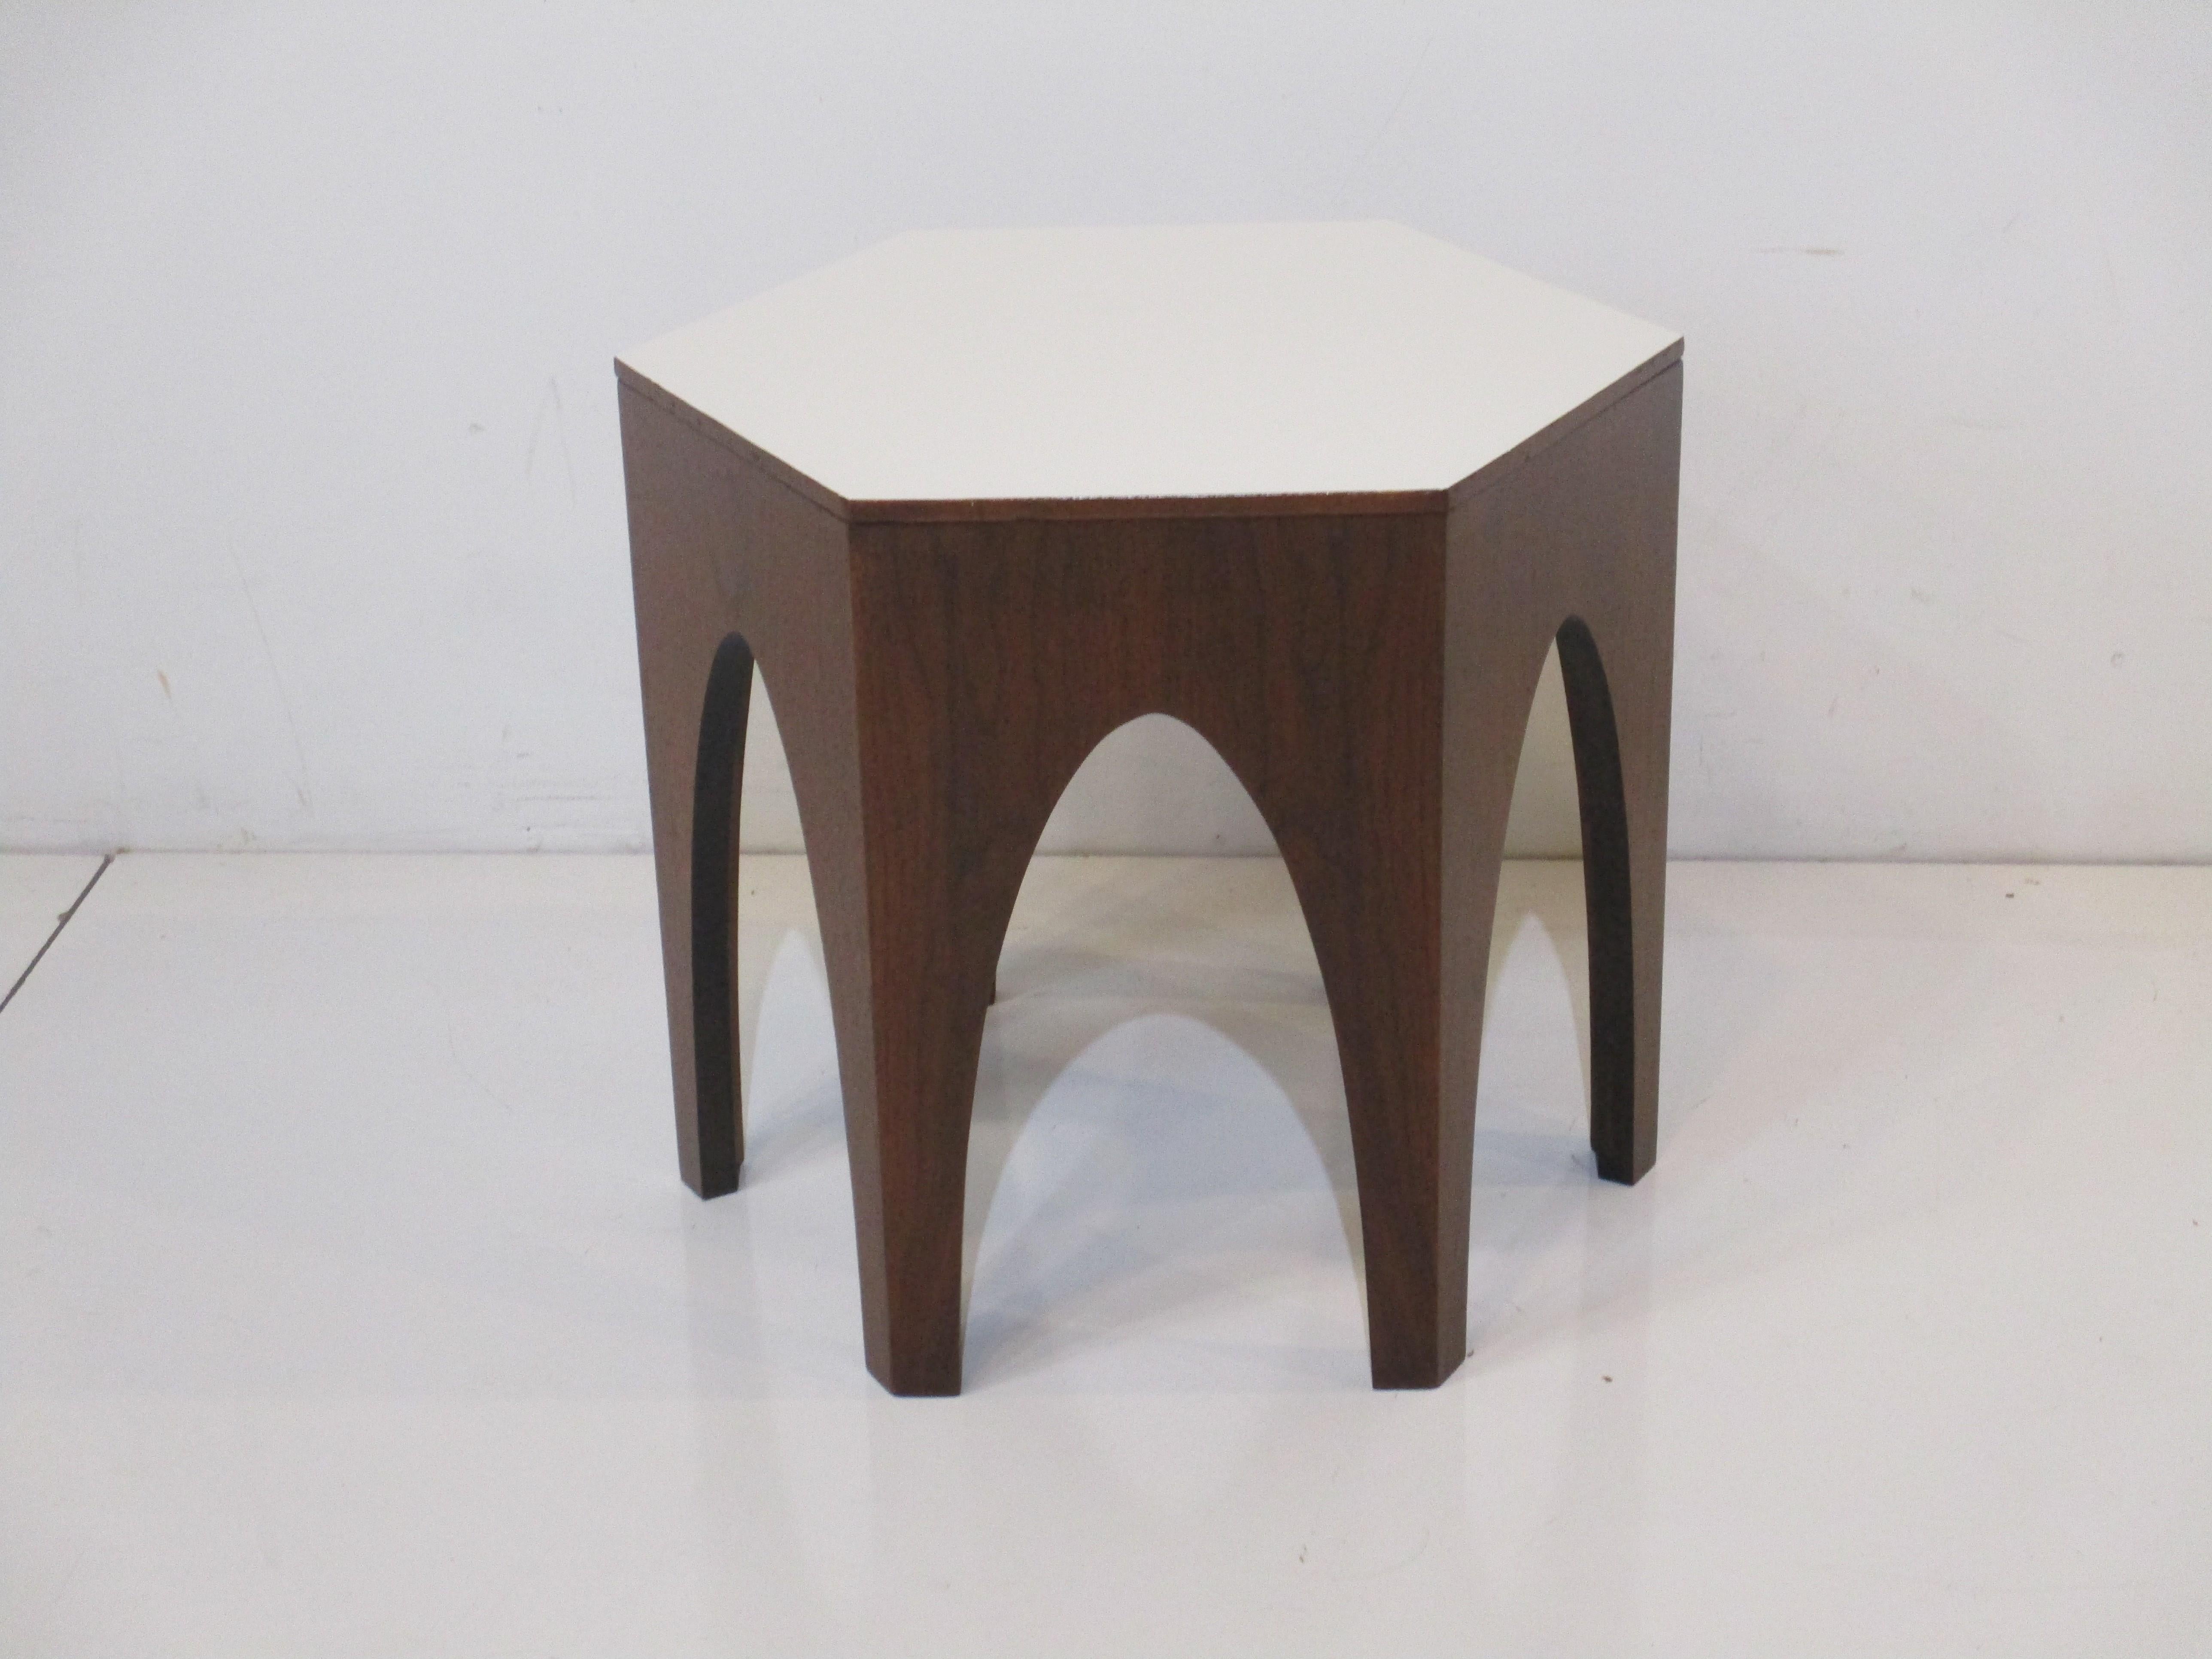 Table d'appoint octogonale en noyer de belle taille avec des pieds arqués et un plateau en stratifié blanc. La table idéale à côté d'une chaise longue ou d'un coin qui a besoin d'un petit quelque chose. Conçu à la manière de Harvey Probber.